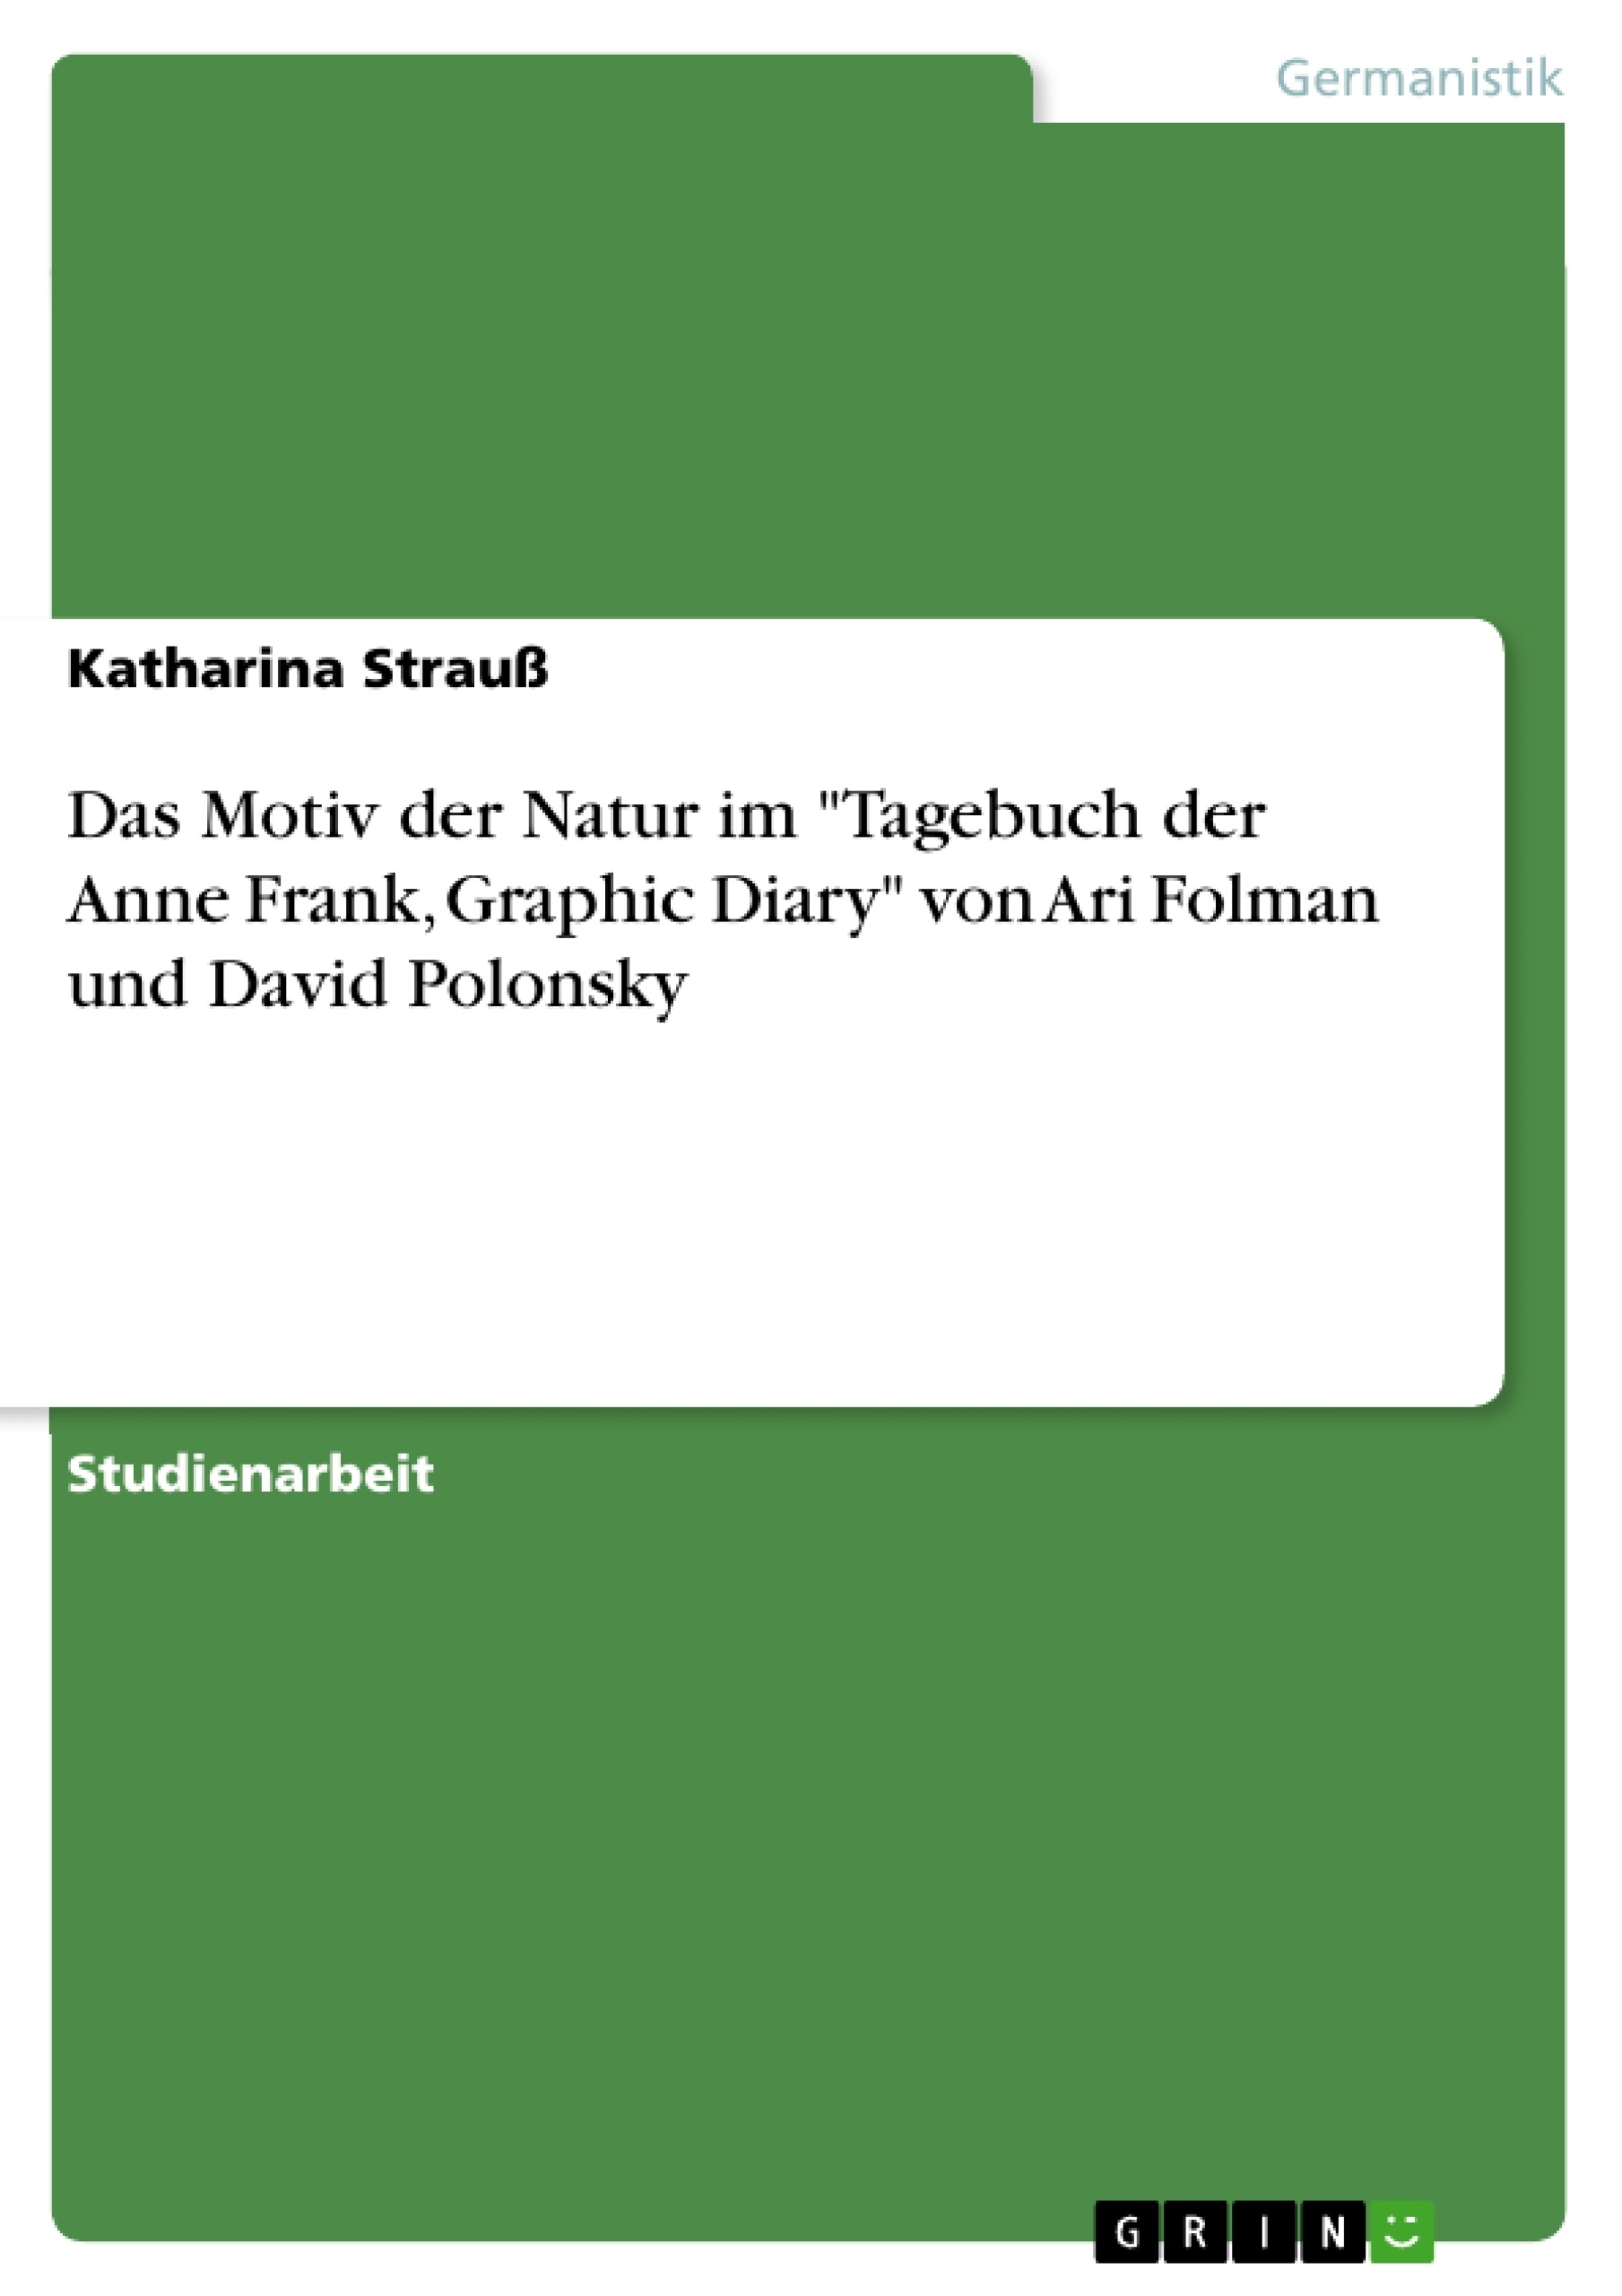 Titel: Das Motiv der Natur im "Tagebuch der Anne Frank, Graphic Diary" von Ari Folman und David Polonsky